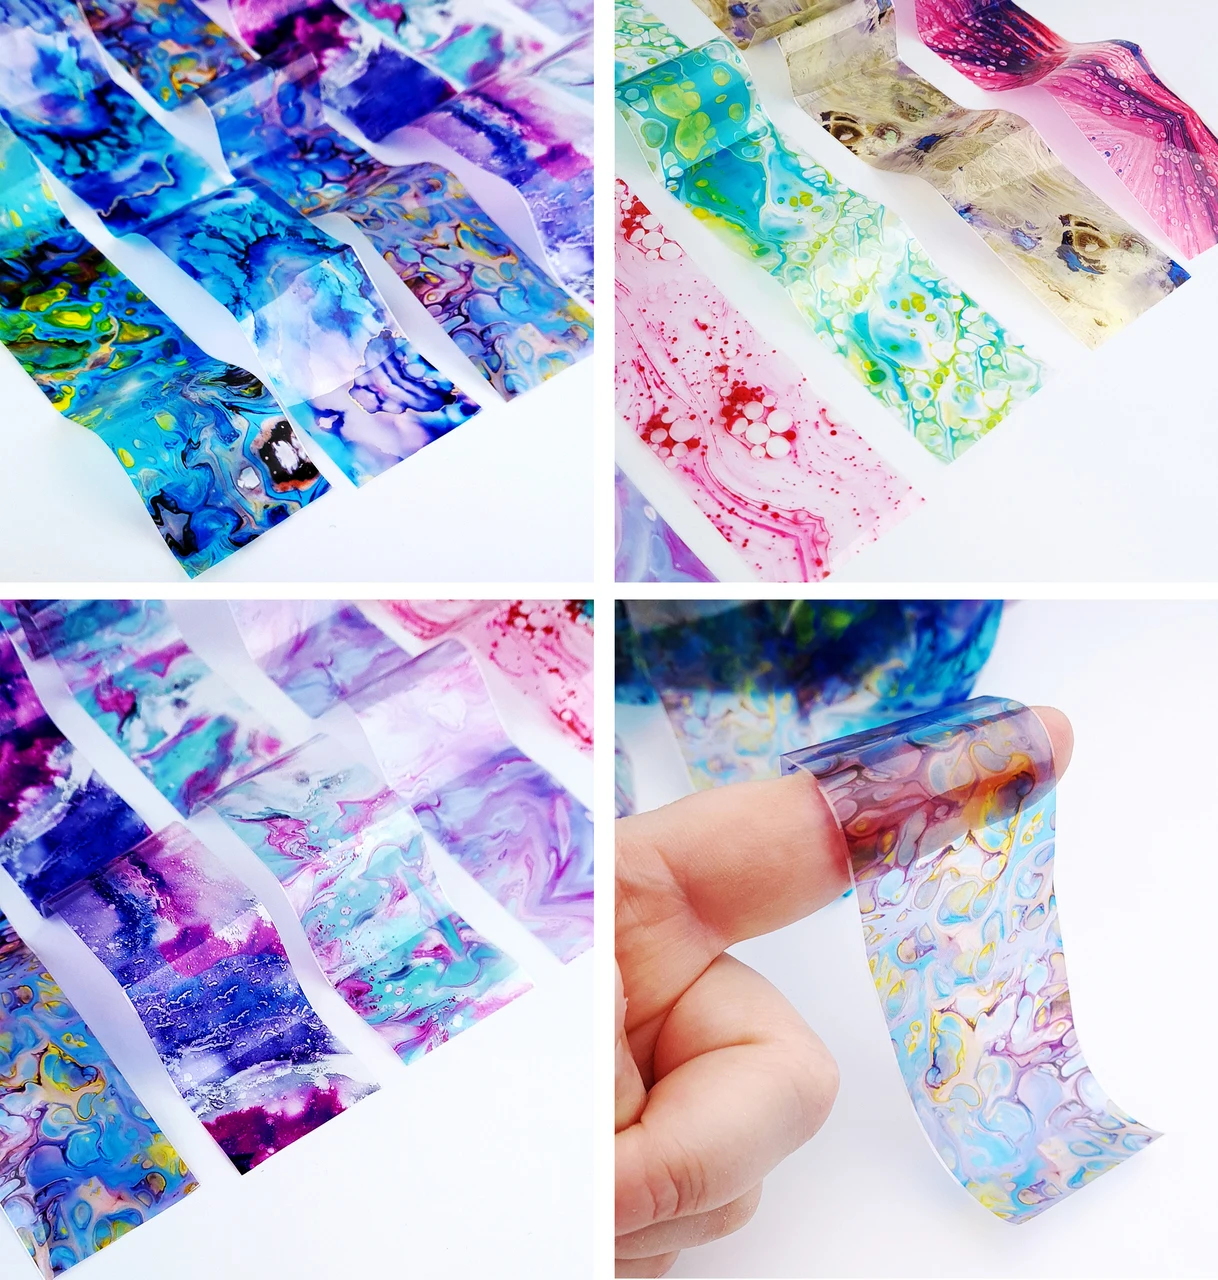 Przezroczysty Kolorowy Wyłożona Kafelkami Nail Art Transfer Foil Set (10 Wzorów W Kartonie)10 Pack Nail Foil Marble Nail Nail Stickers Decal